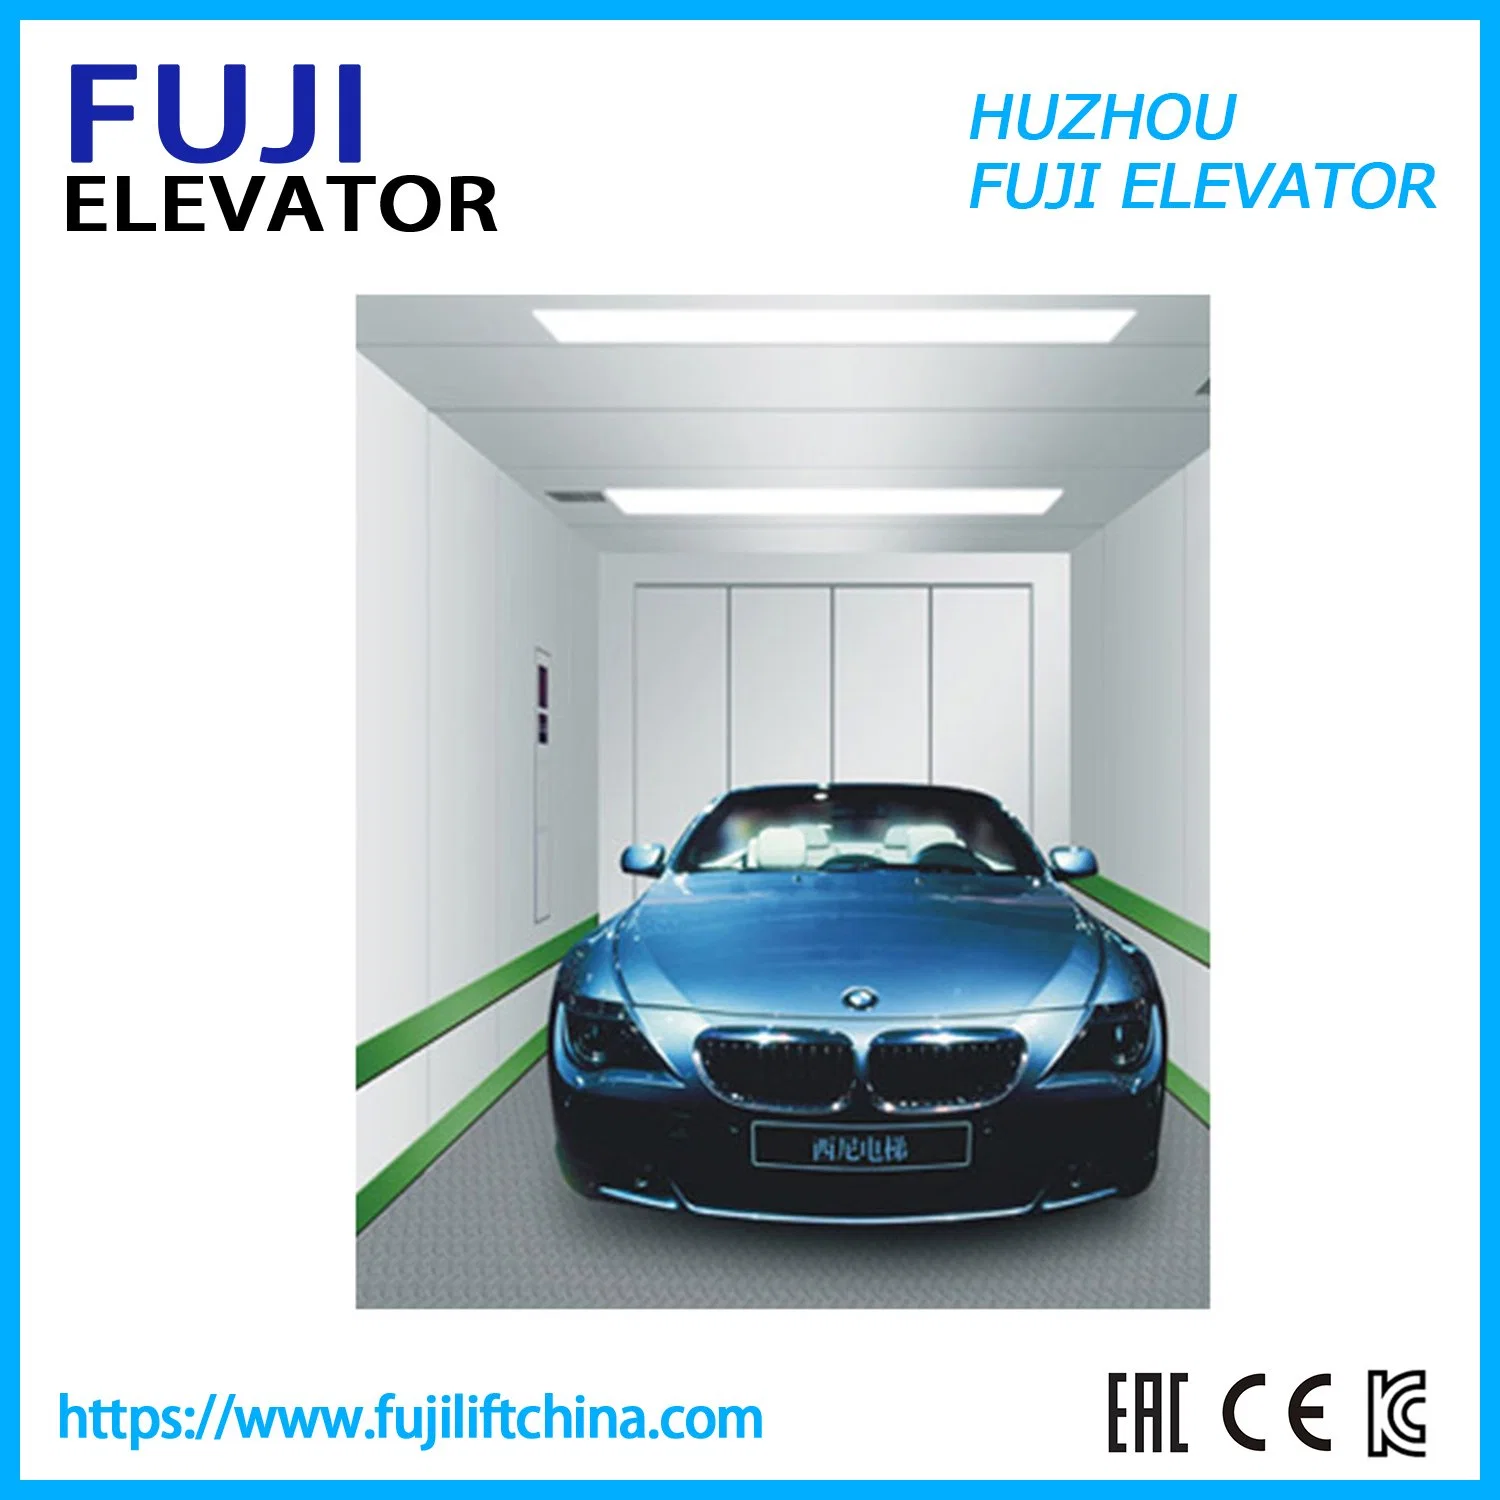 FUJI Ascenseur de voiture Ascenseur de marchandises Ascenseur de marchandises Ascenseur de voiture avec bon prix de l'usine chinoise fabricant Contrôle Vvvf